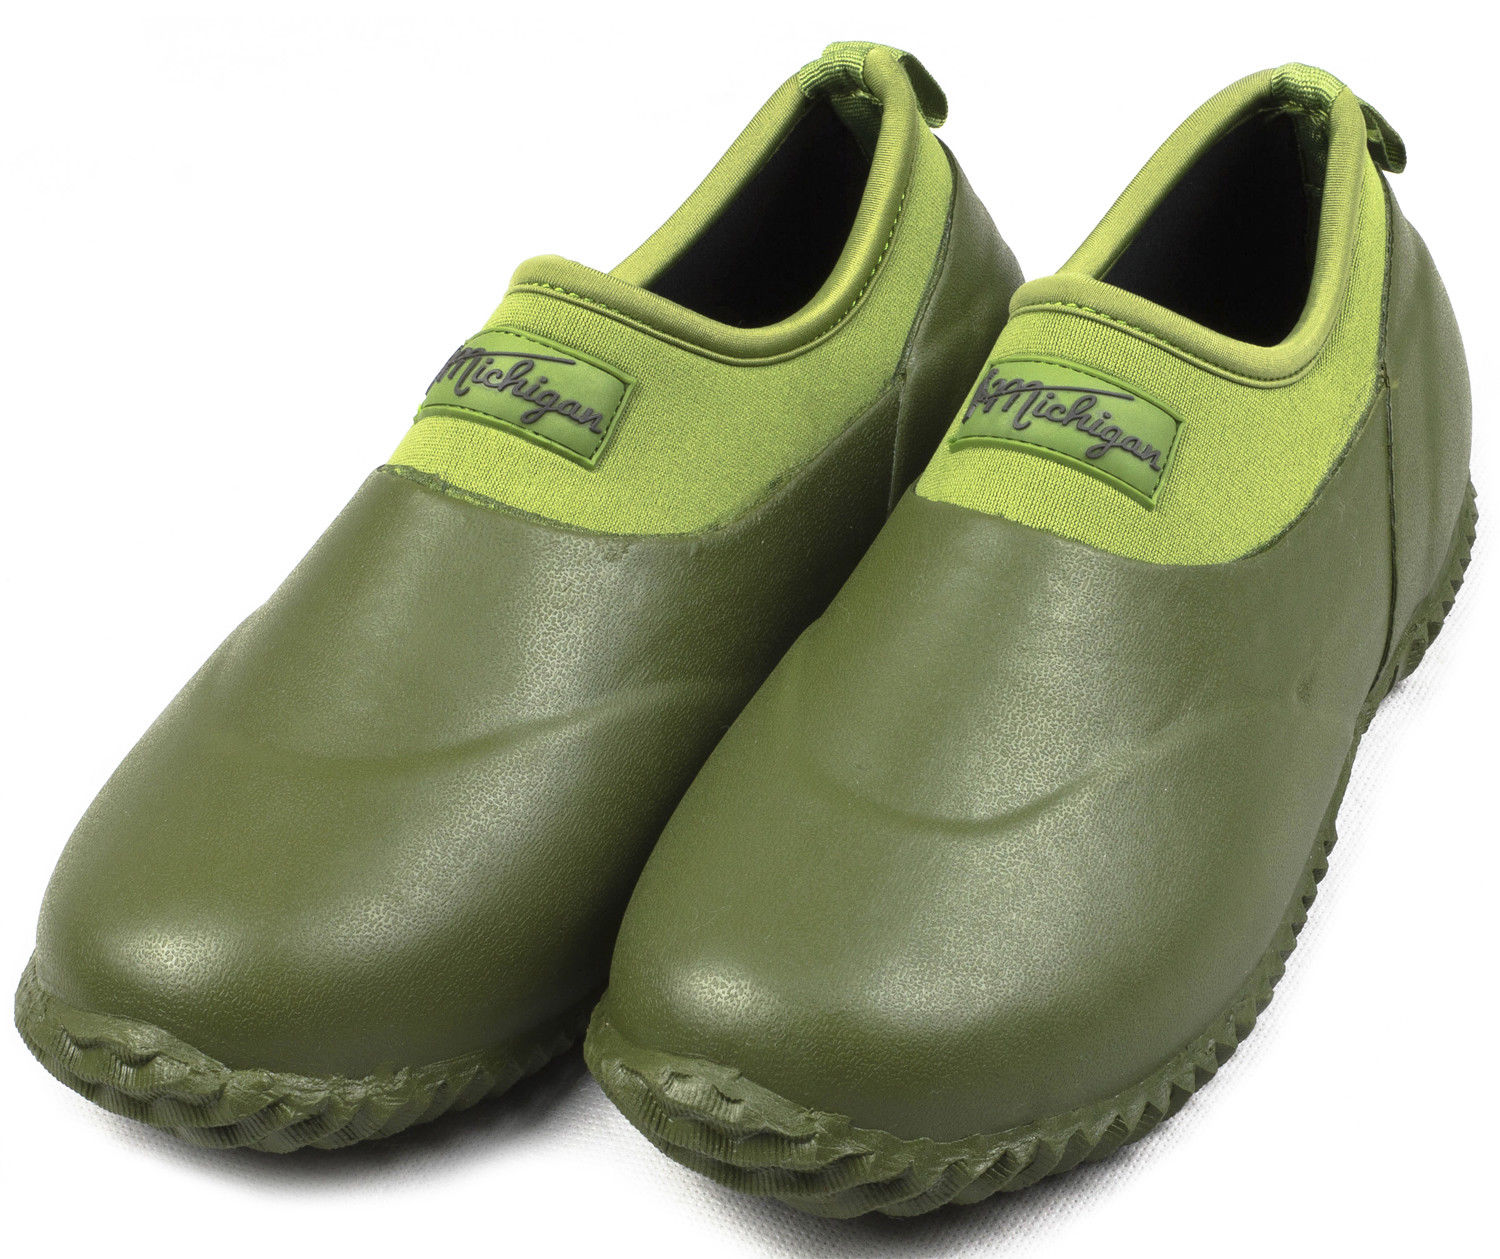 Michigan Green Neoprene Garden Boots Slip On Waterproof Outdoor Shoe | eBay